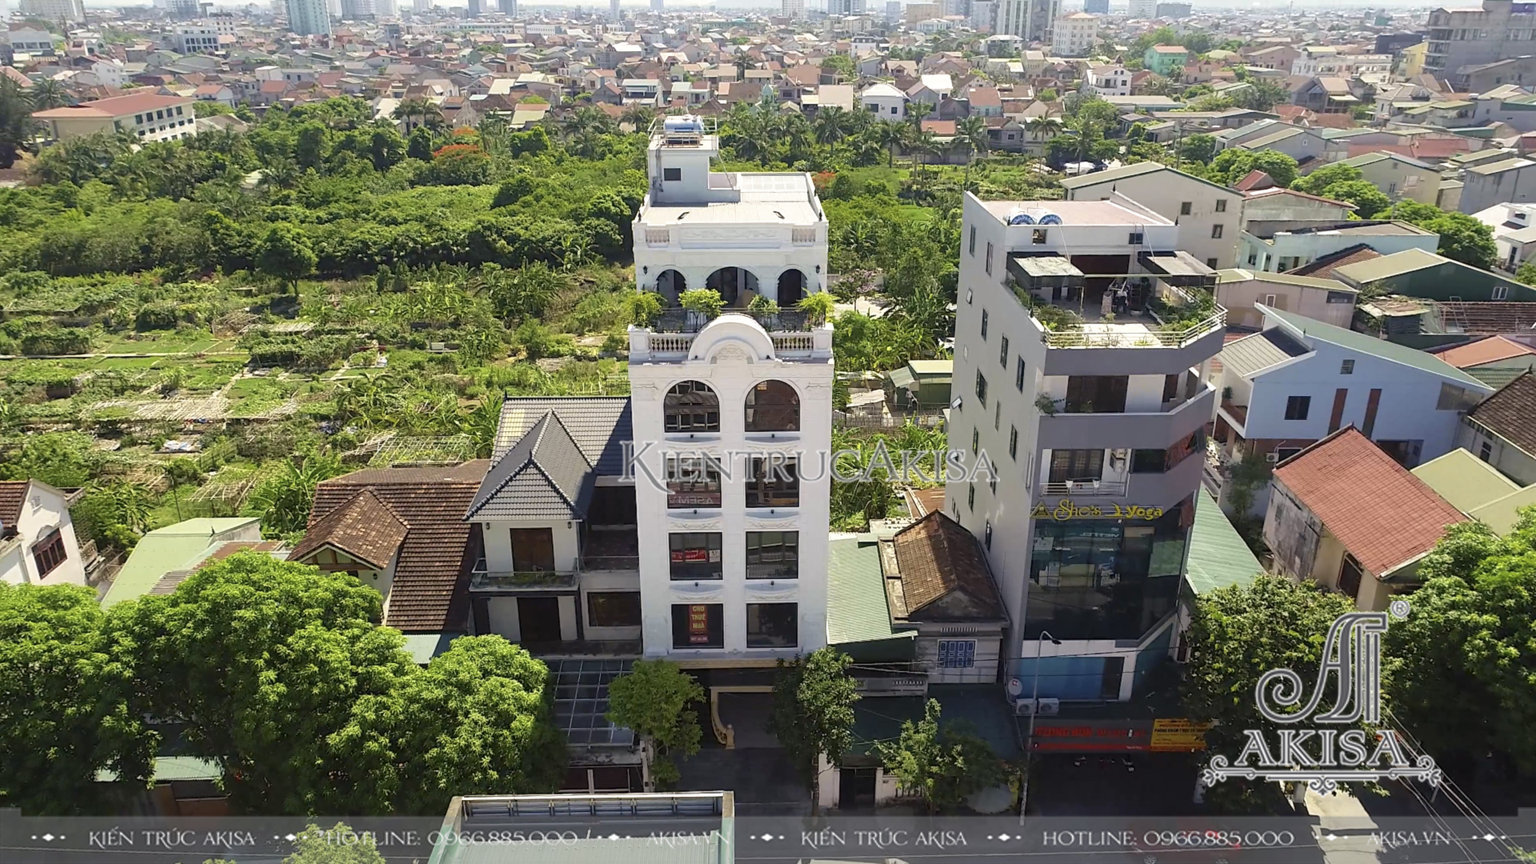 Hoàn thiện nhà phố kết hợp kinh doanh phong cách tân cổ điển tại Nghệ An